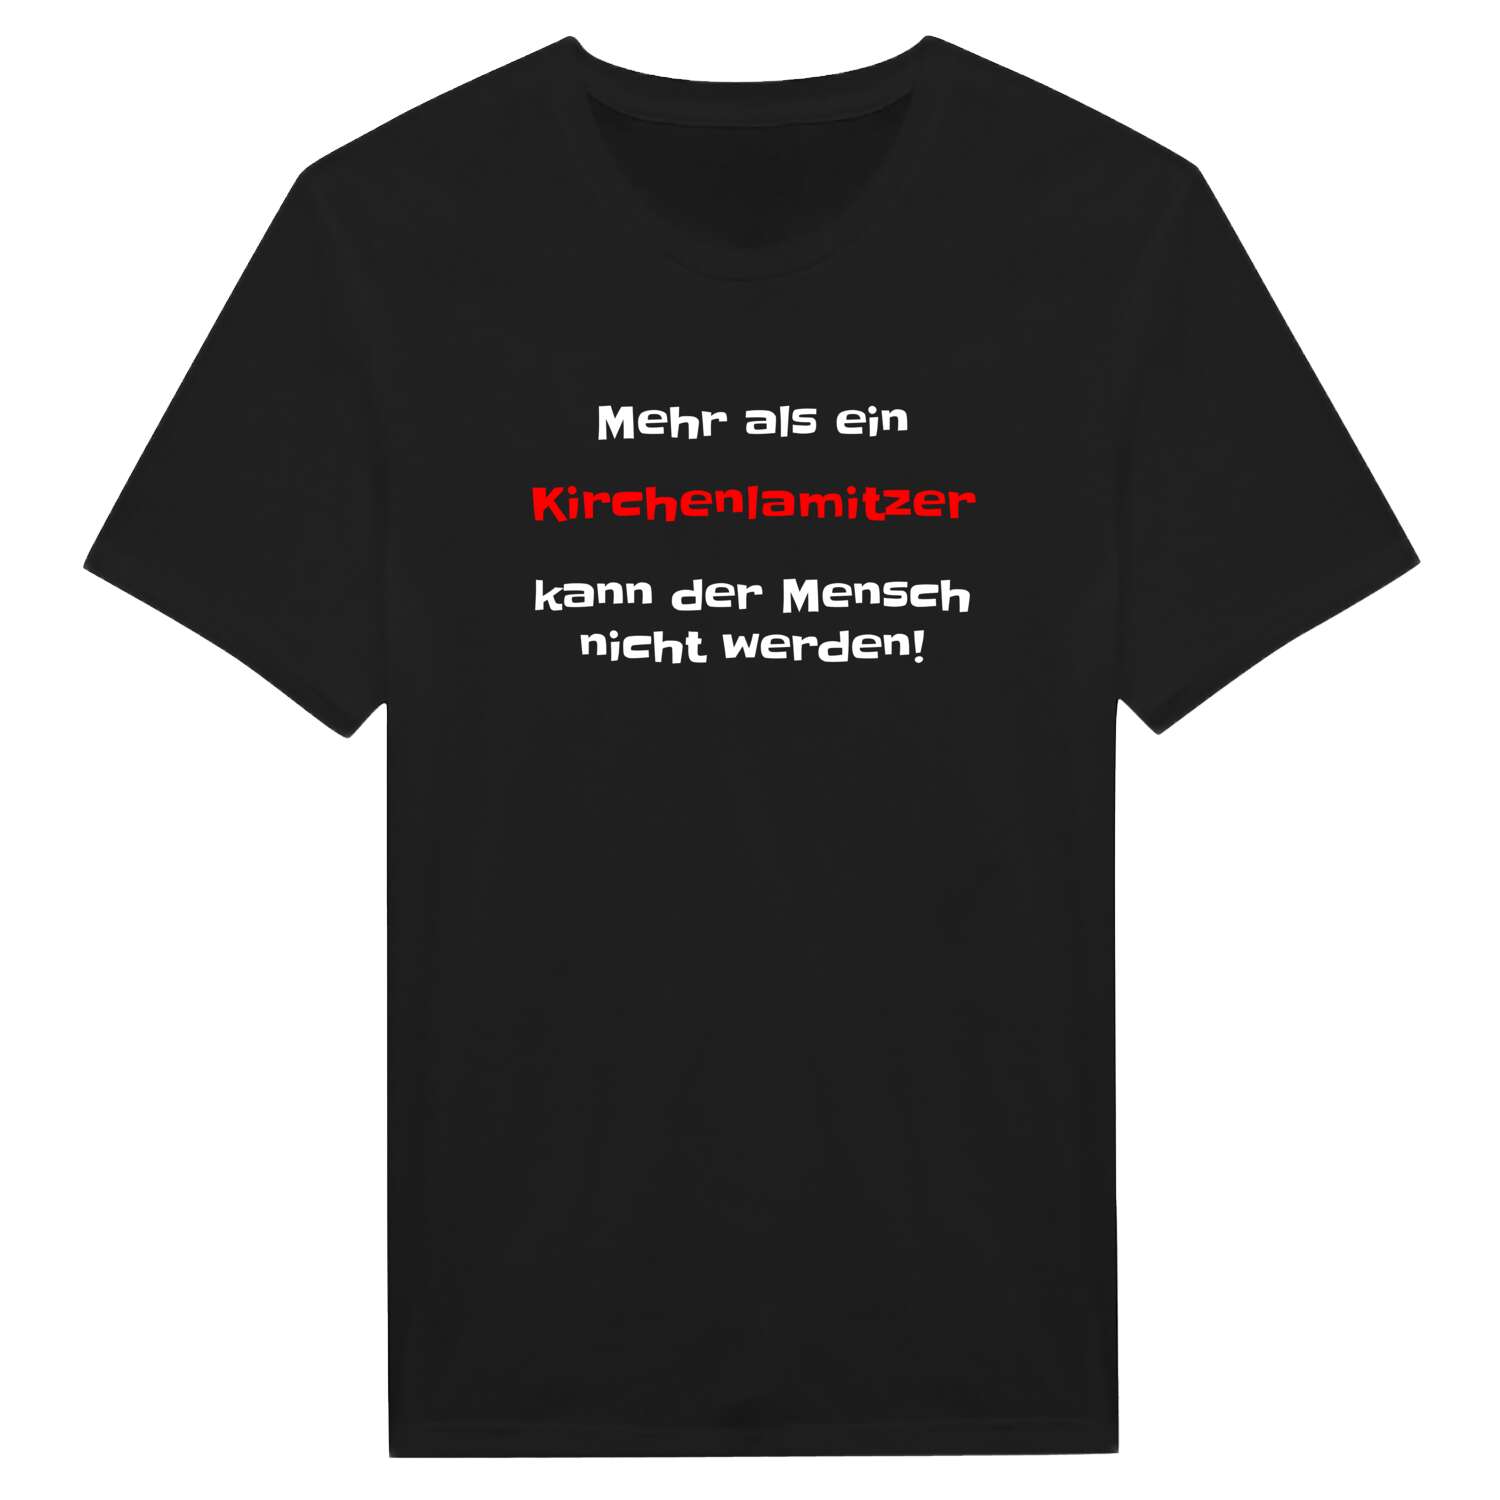 Kirchenlamitz T-Shirt »Mehr als ein«